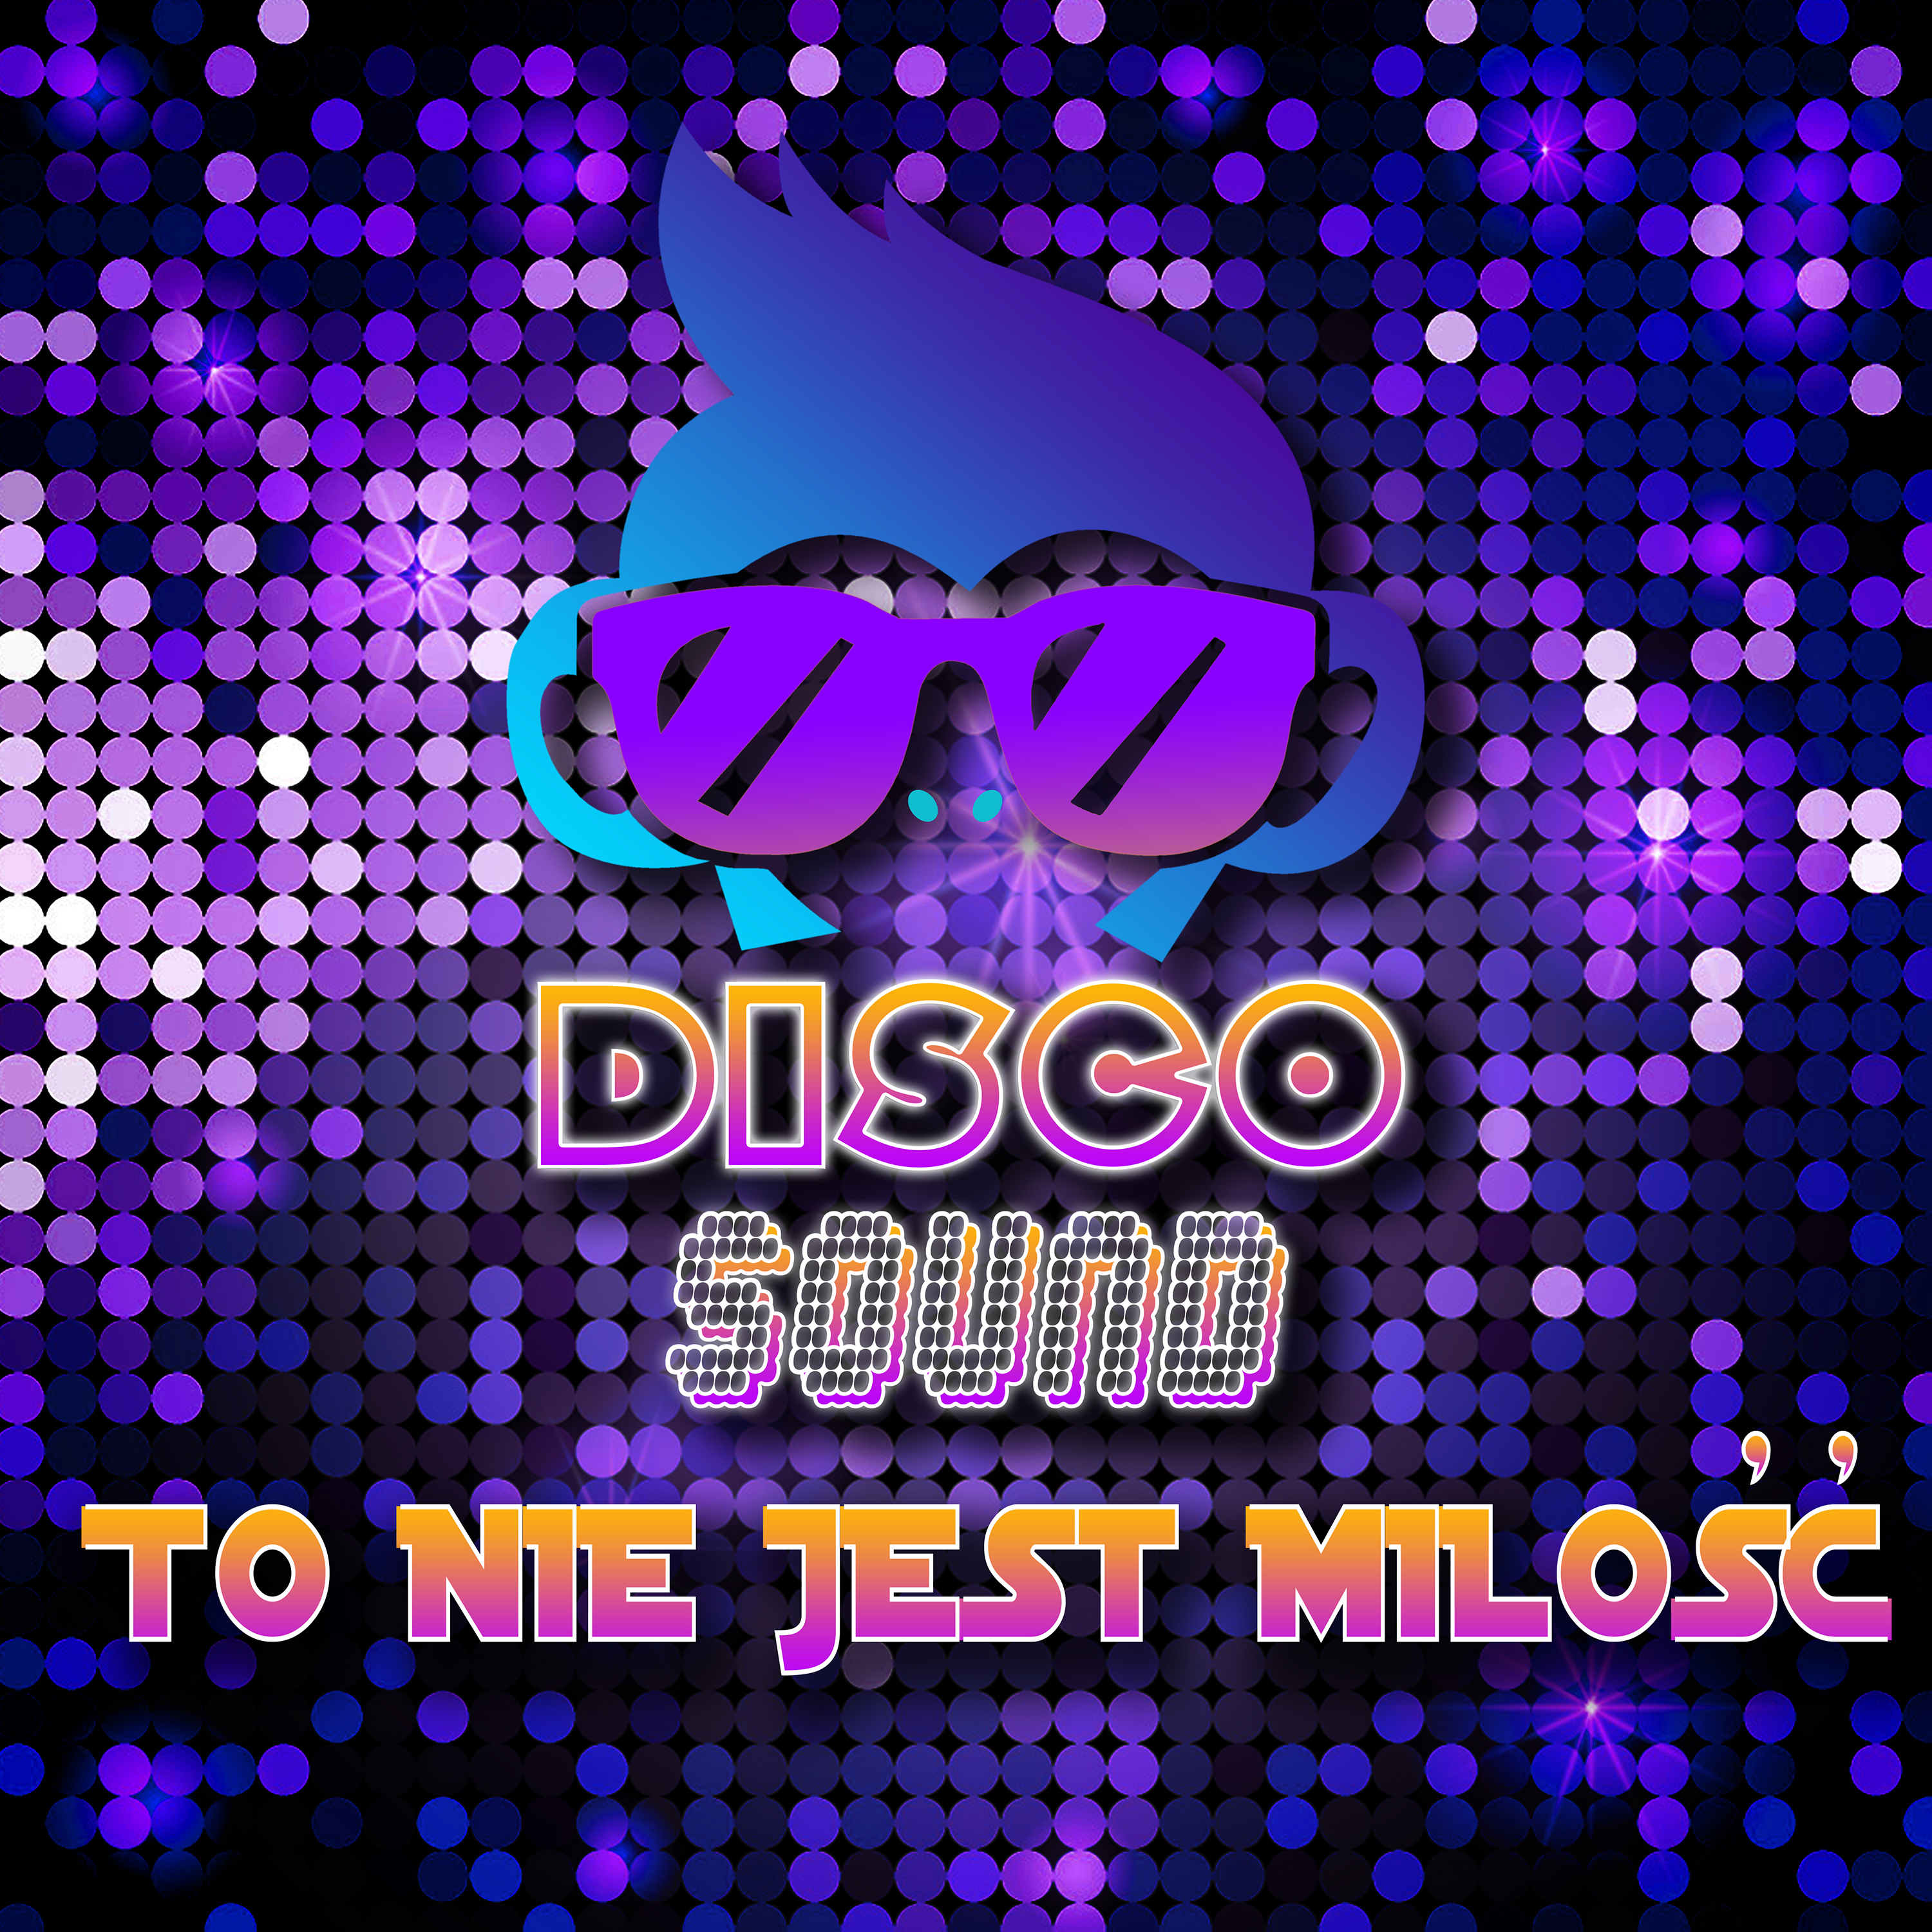 Disco Sound - To nie jest milosc